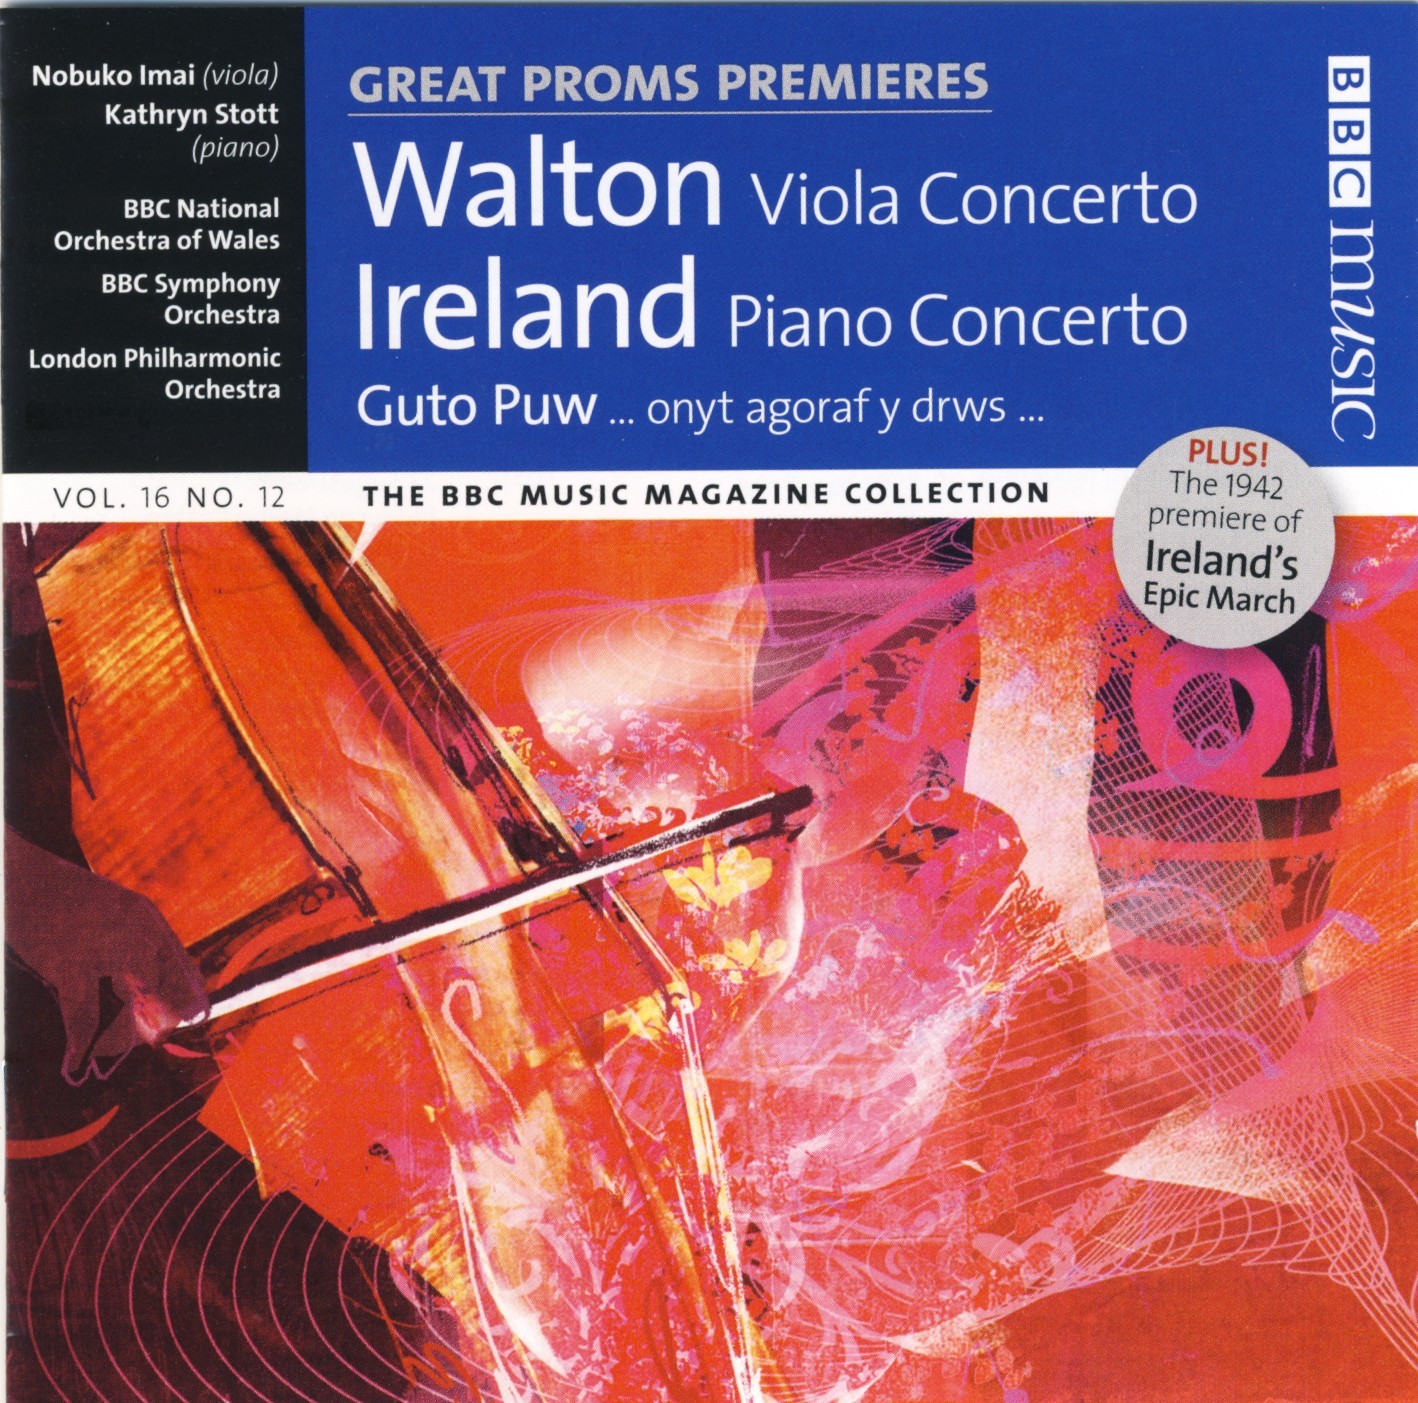 Great Proms Premieres Walton Viola Concerto - Ireland PC Guto Puw